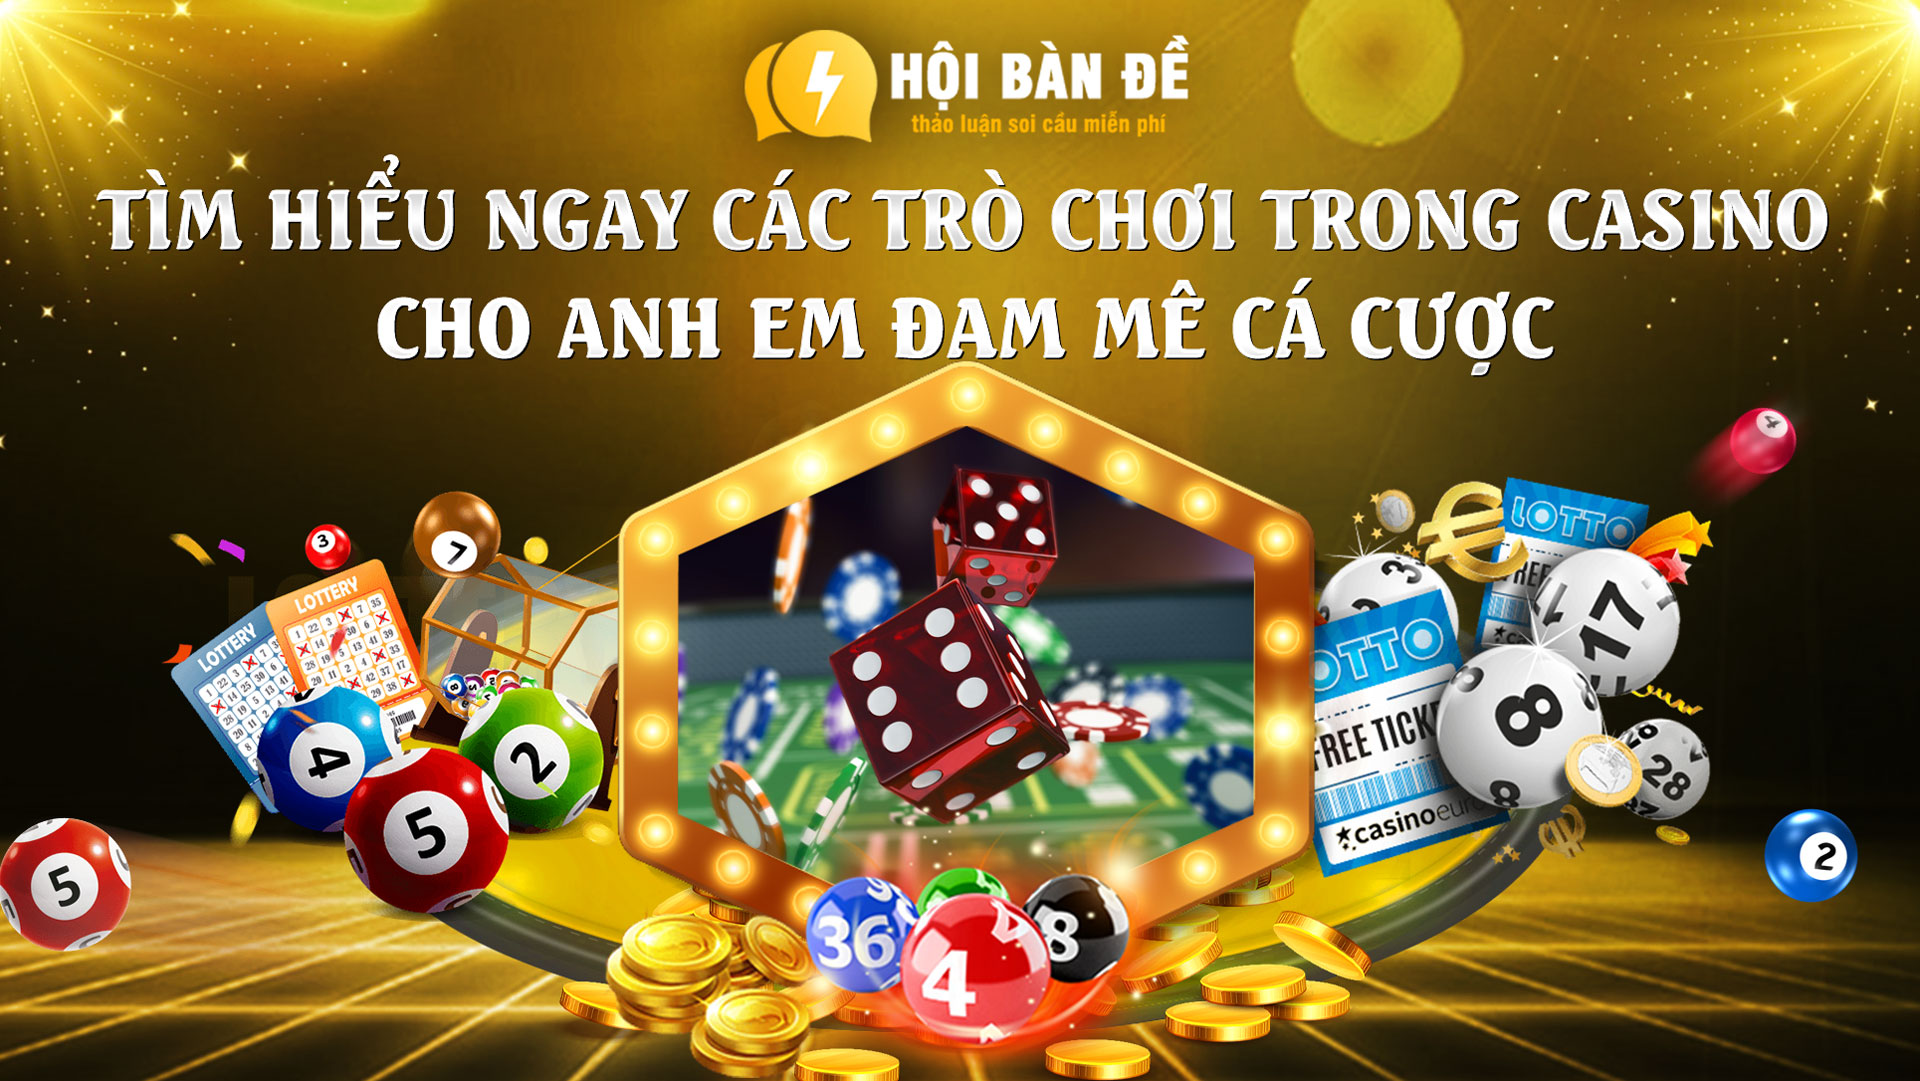 Tro Choi Trong Casino